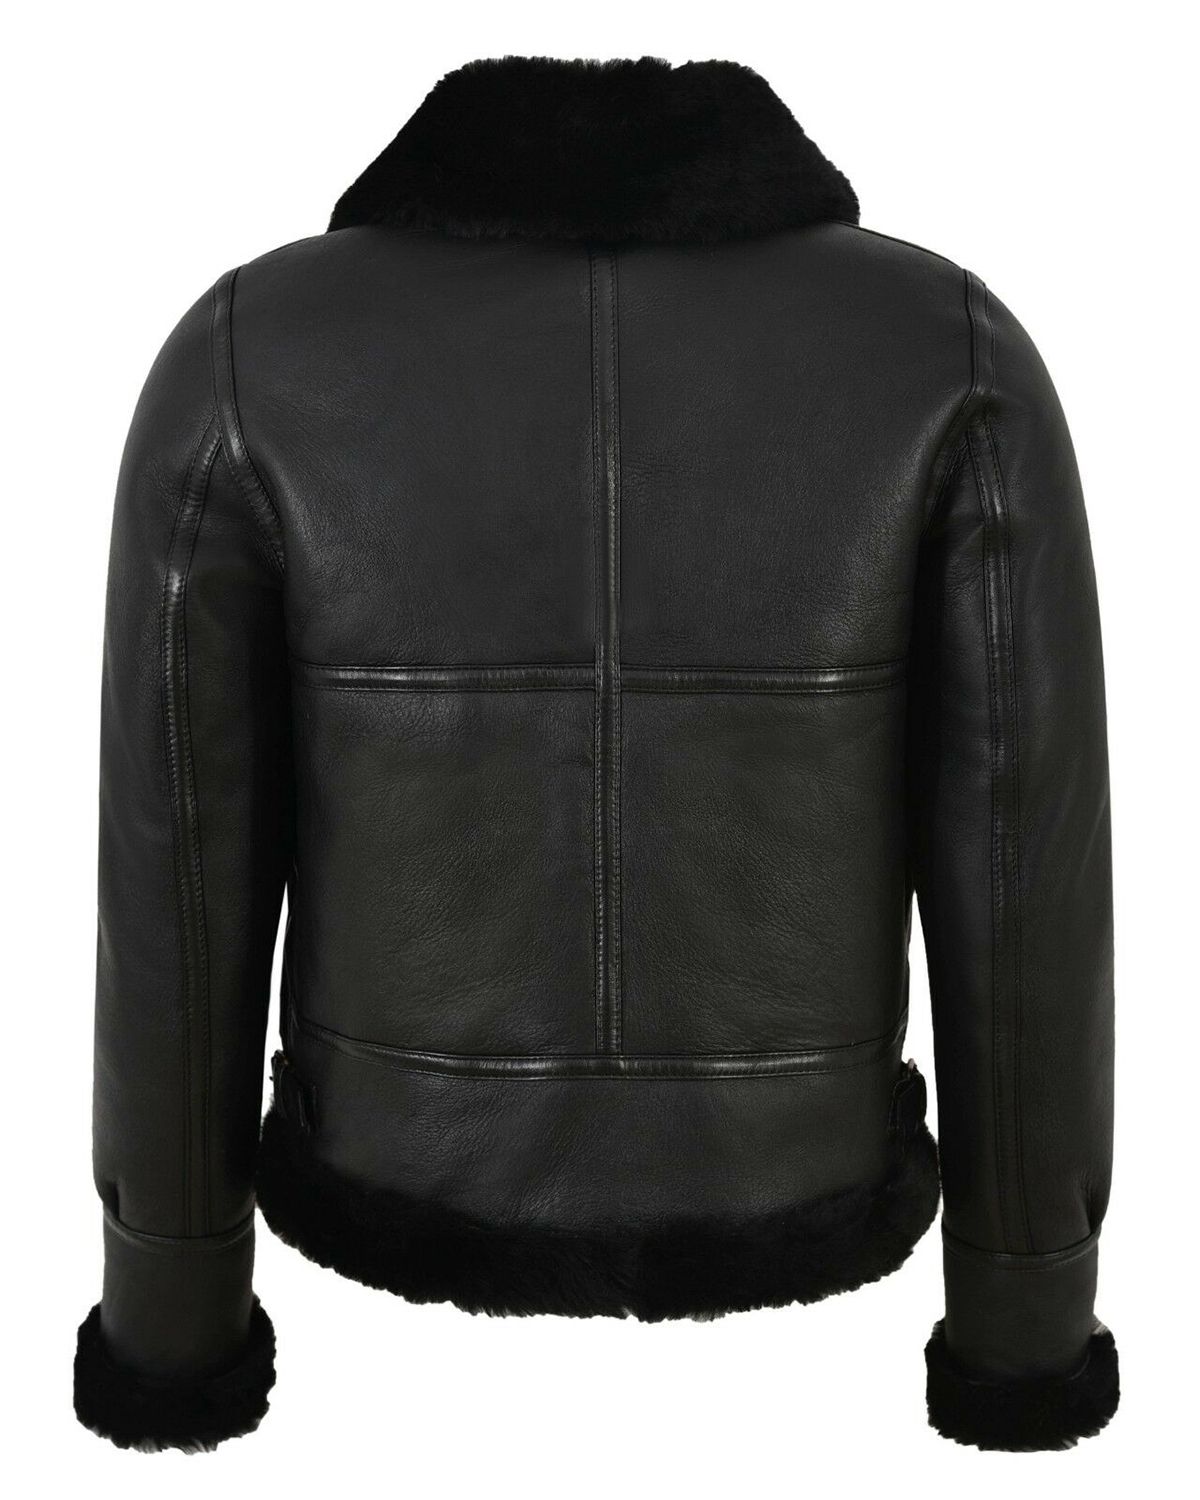 women winter jacket black leather jacket women shearling jacket black fur jacket gift for her black puffer jacket women